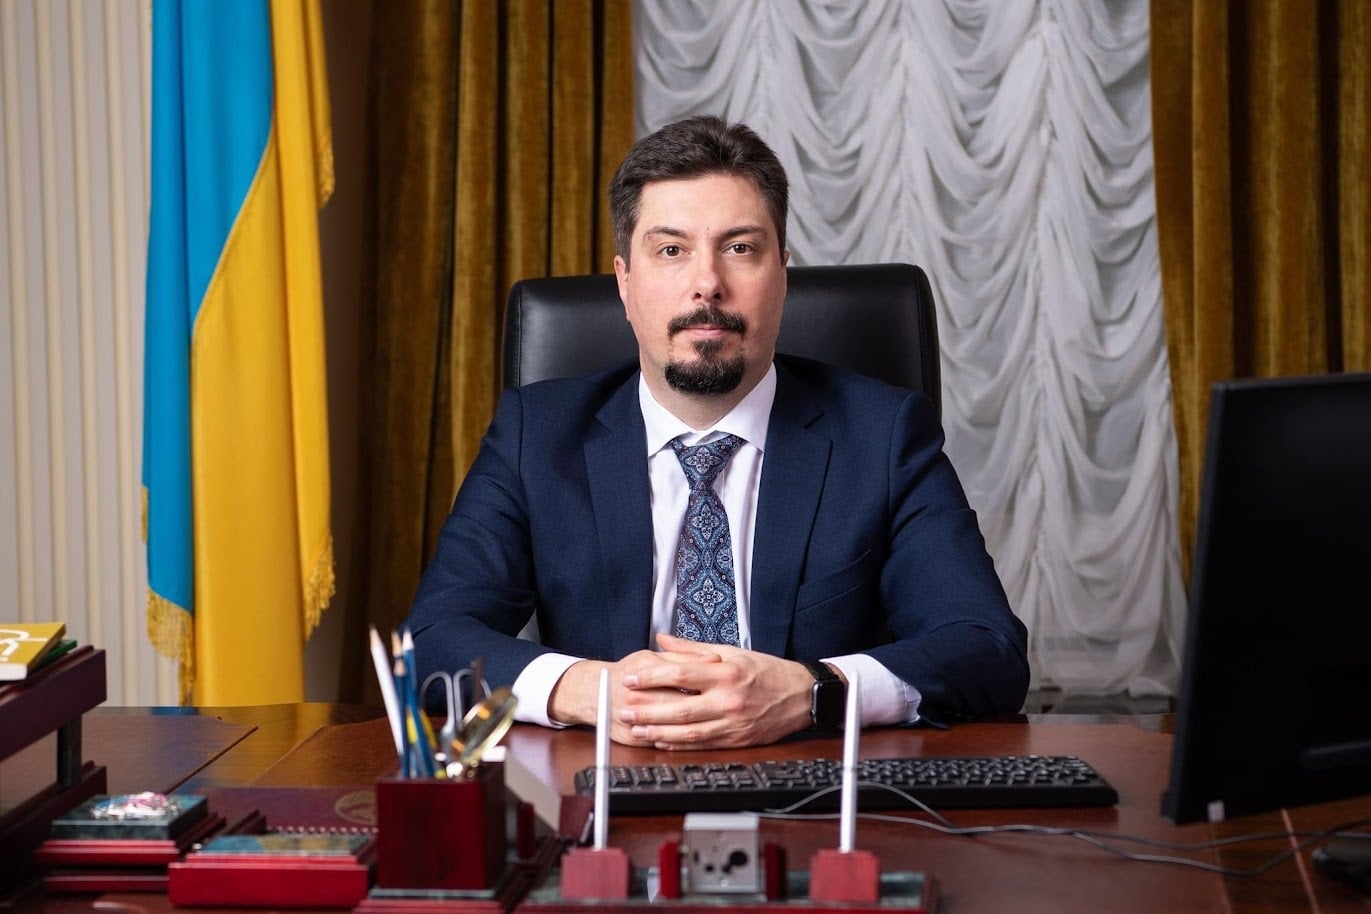 Ουκρανία: Επιασαν τον πρόεδρο του Ανώτατου Δικαστηρίου με 3 εκατ. δολάρια από δωροδοκίες